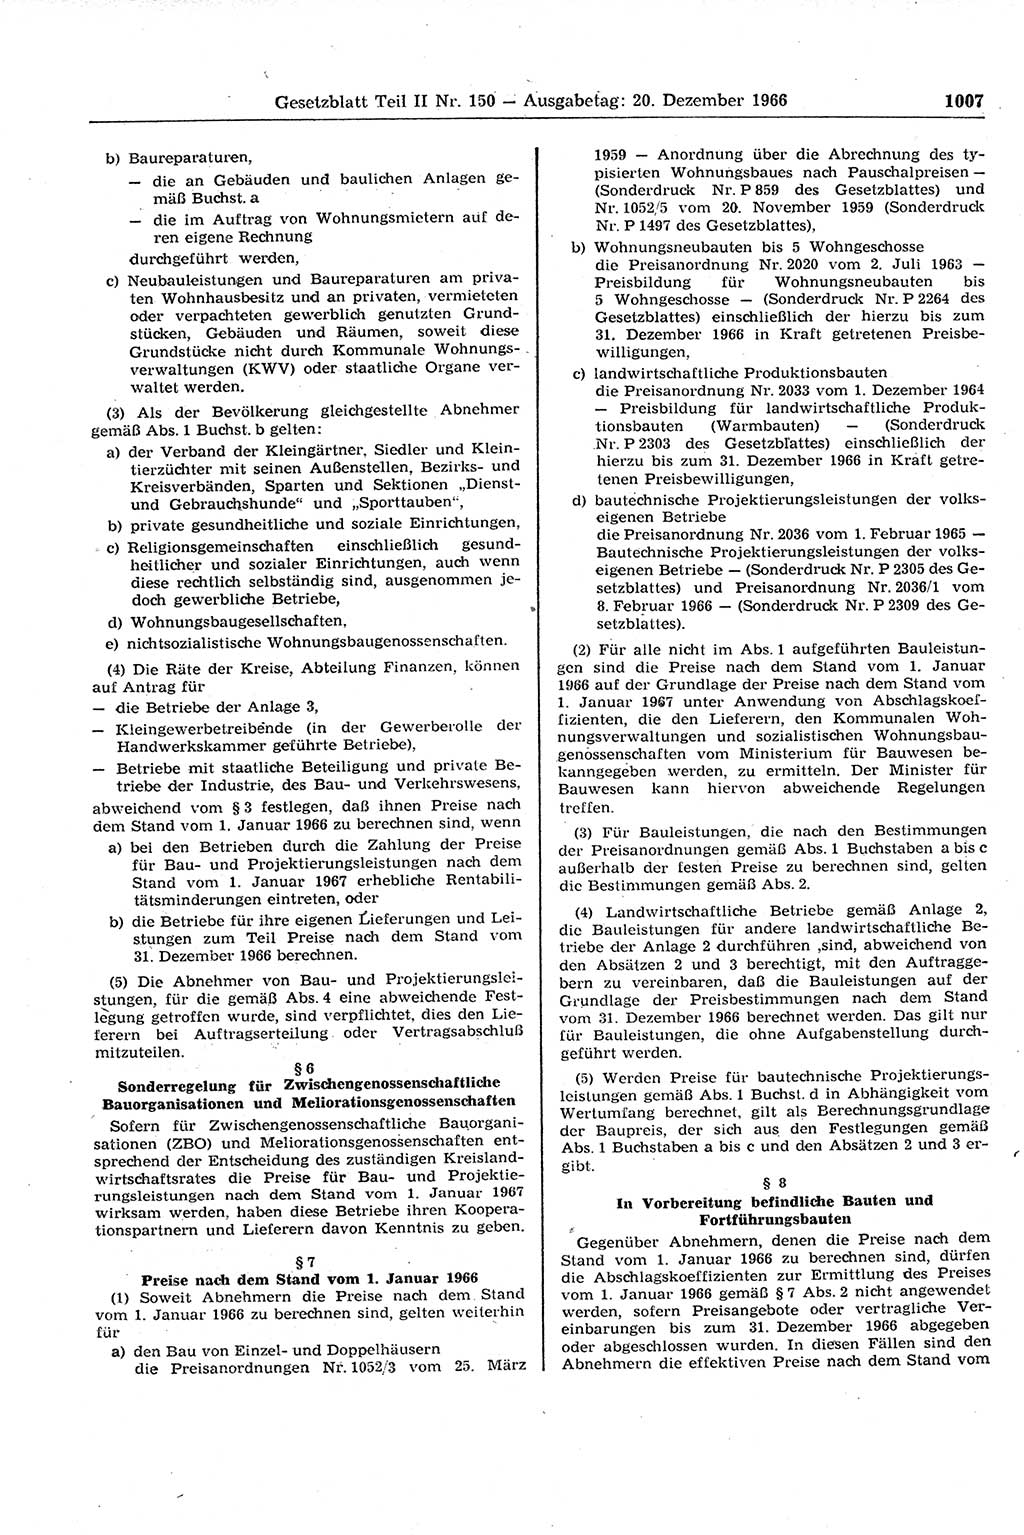 Gesetzblatt (GBl.) der Deutschen Demokratischen Republik (DDR) Teil ⅠⅠ 1966, Seite 1007 (GBl. DDR ⅠⅠ 1966, S. 1007)